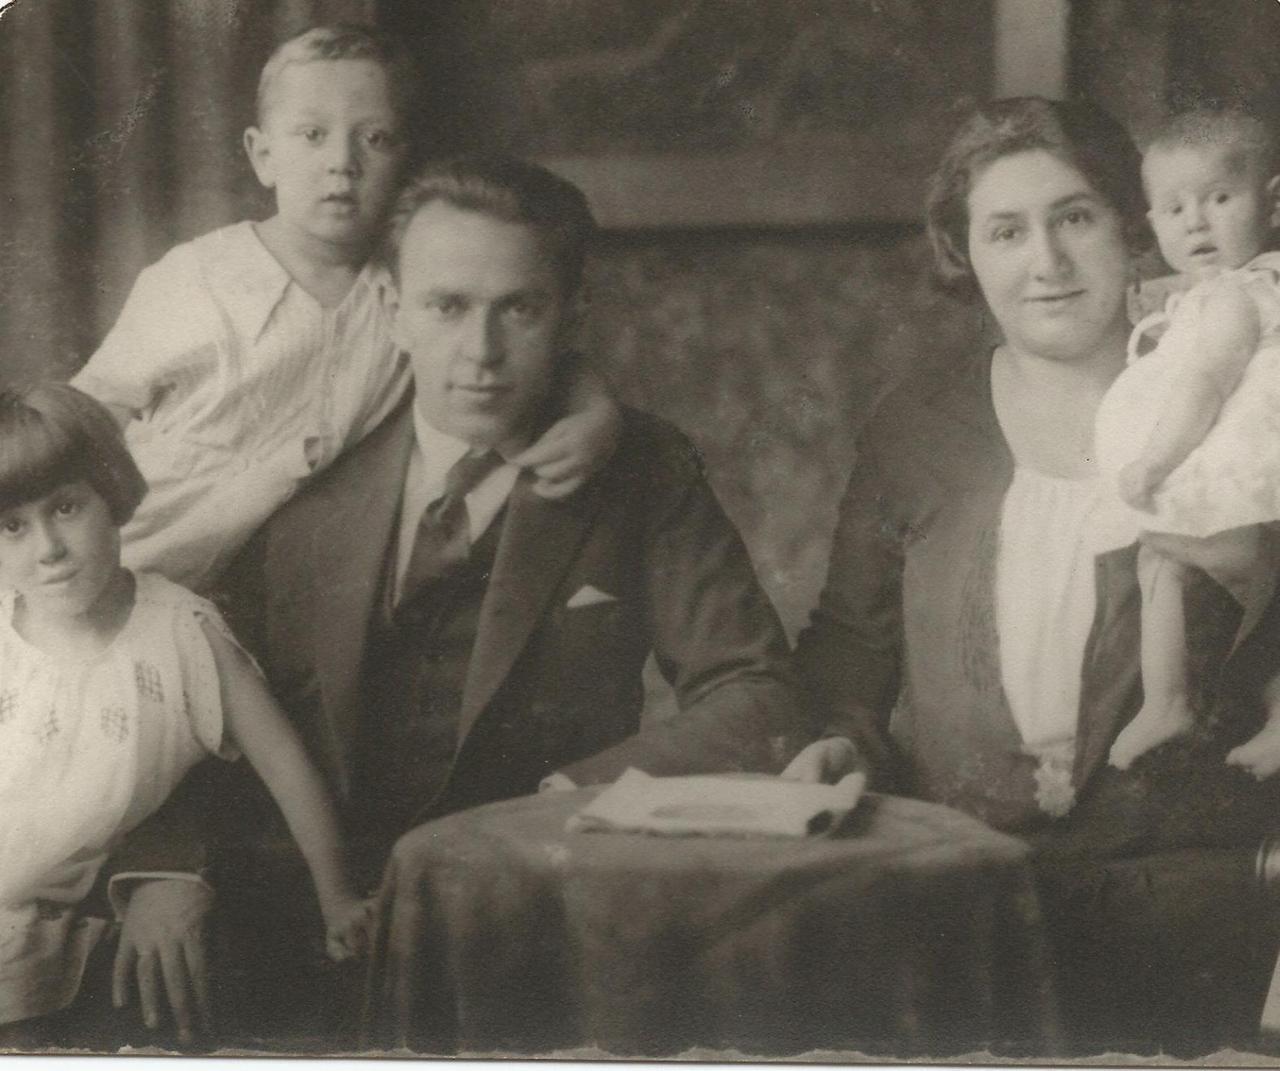 Familienfoto mit Vater, Mutter und drei Kindern in schwarz-weiß